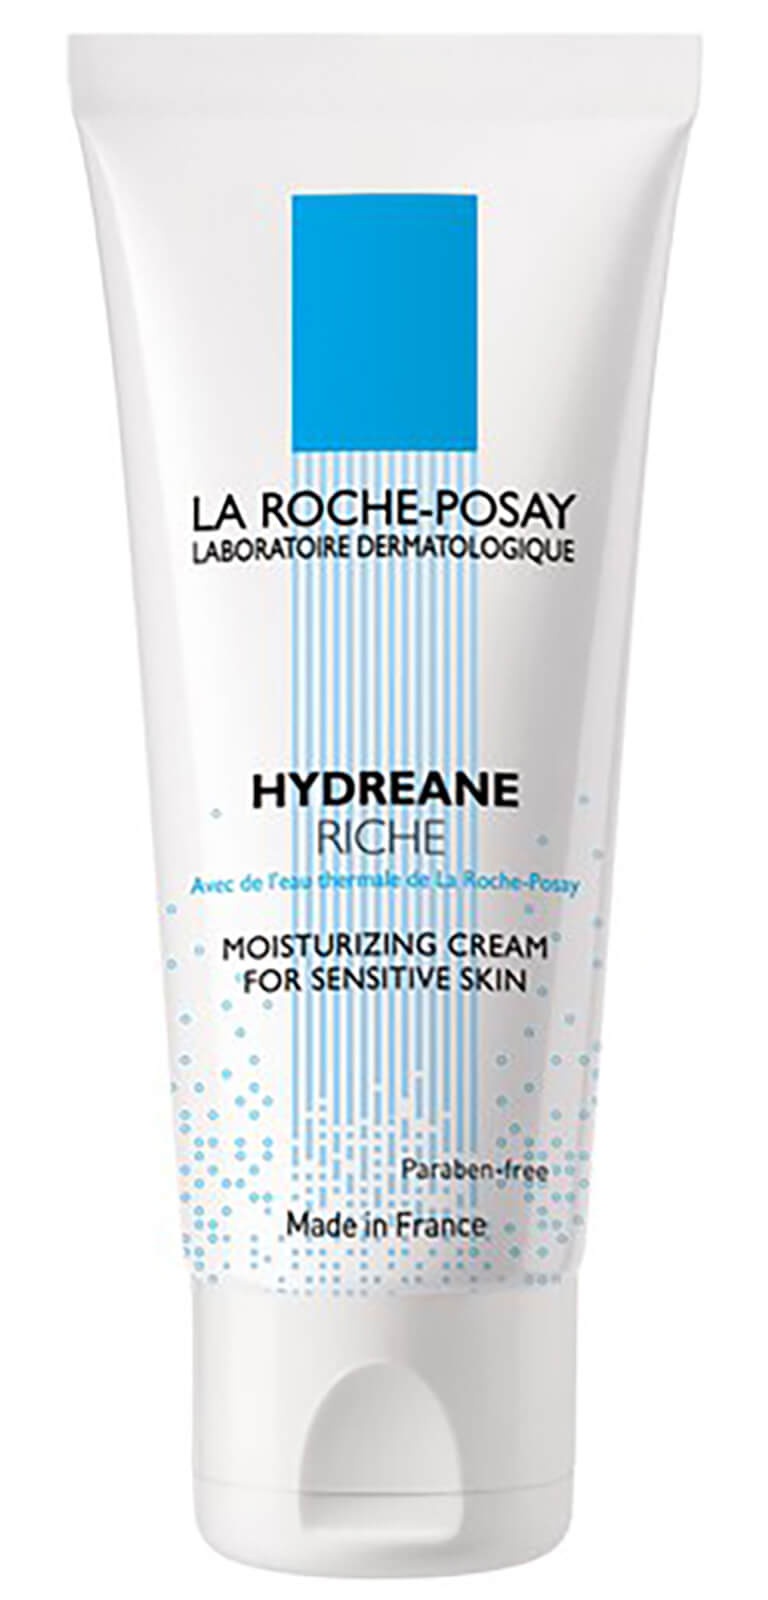 La Roche-Posay Hydreane Legere - Thermal Spring Water Cream - Sensitive Skin